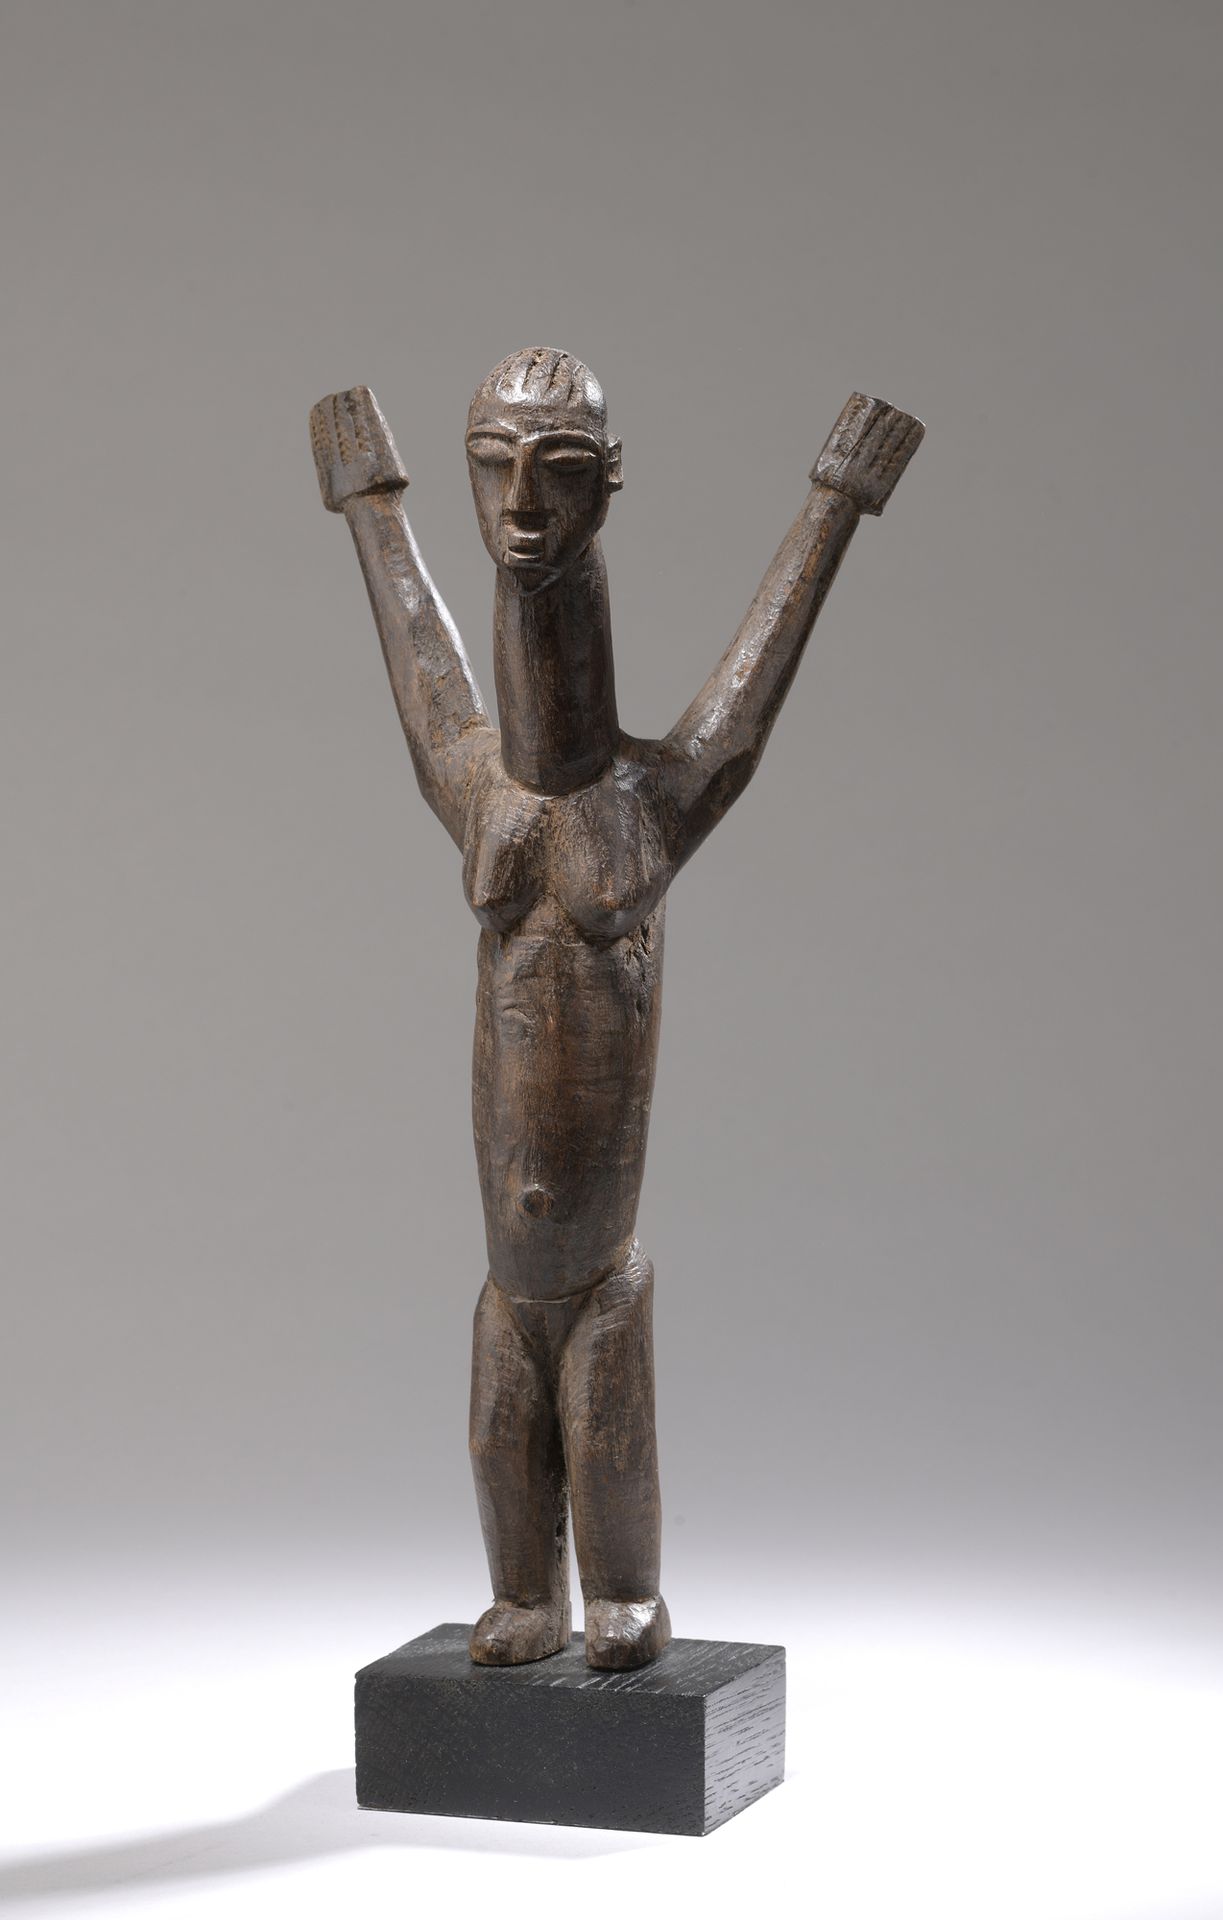 Null BATEBA LOBI雕像，布基纳法索

带有棕色铜锈的木材。

H.26.5厘米

女性雕像举起双臂以示变身，雕塑的比例给了半身和颈部最重要的位置。